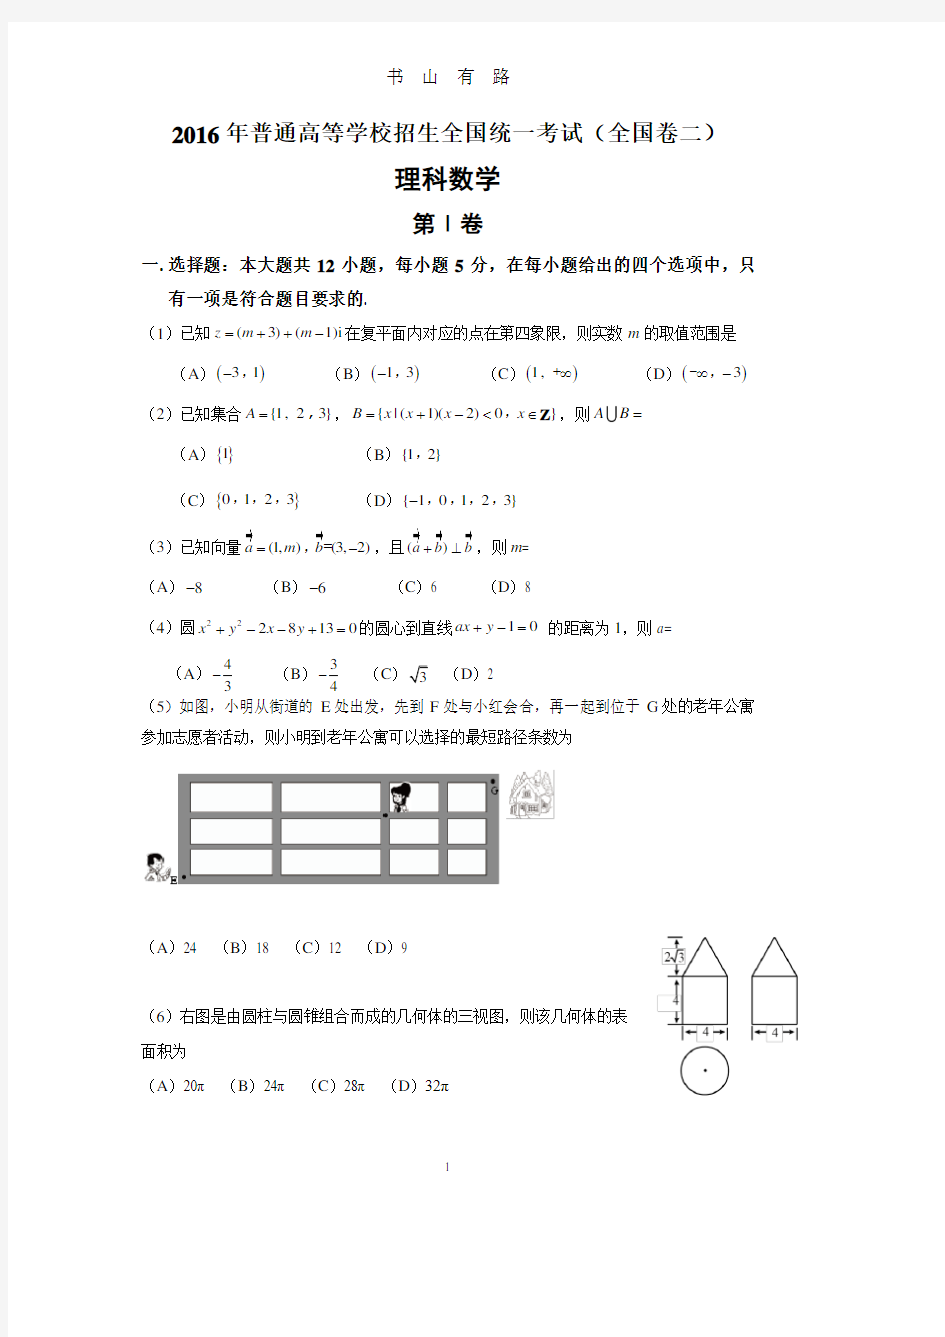 海南高考真题 数学PDF.pdf